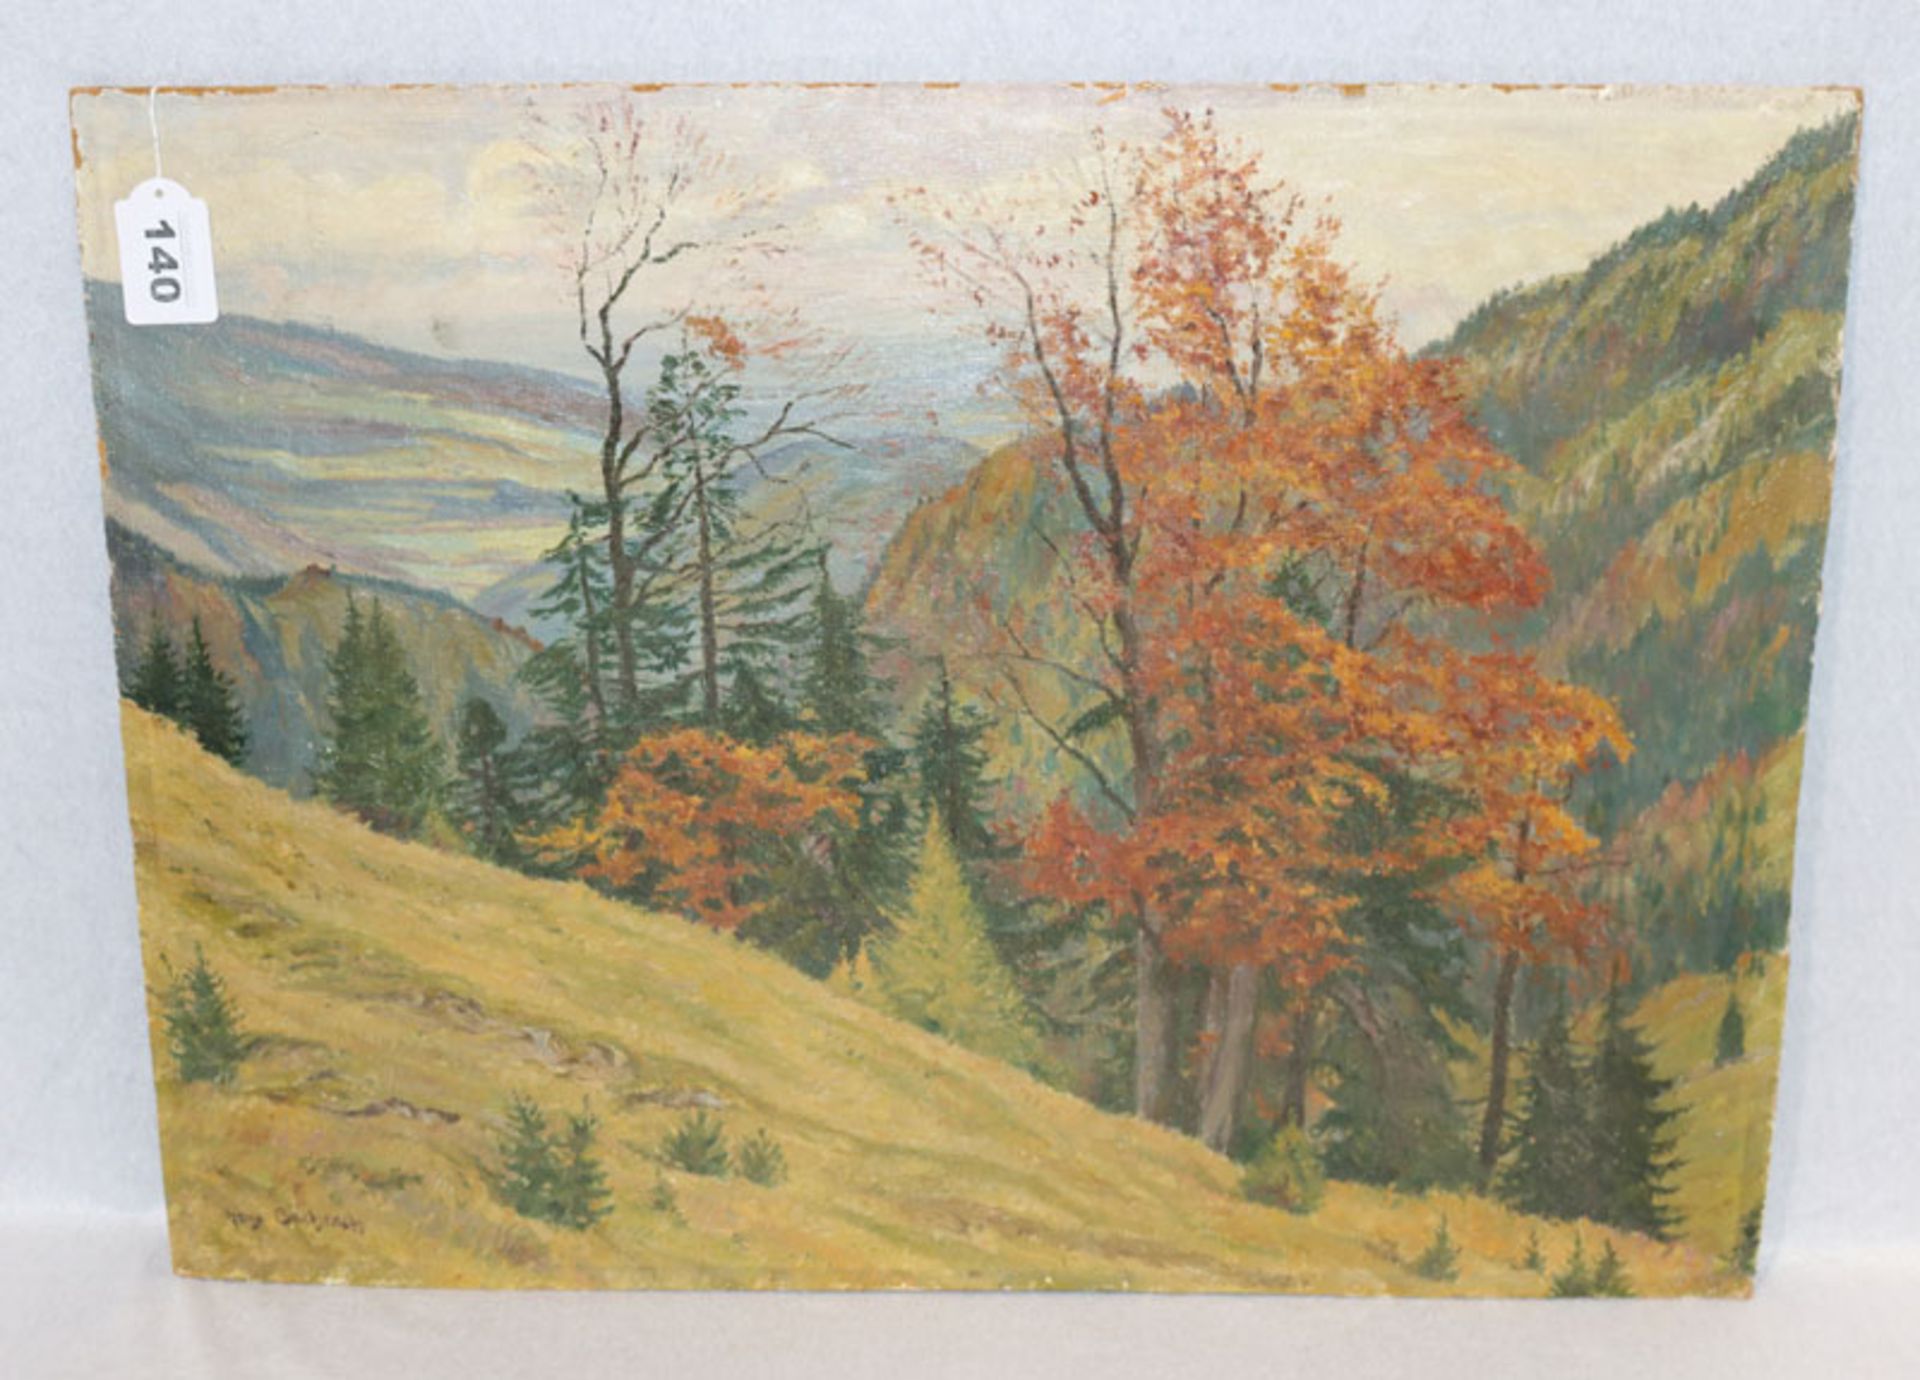 Gemälde ÖL/Hartfaser 'Landschafts-Szenerie im Herbst', signiert Hans Bachrach, ohne Rahmung 45 cm